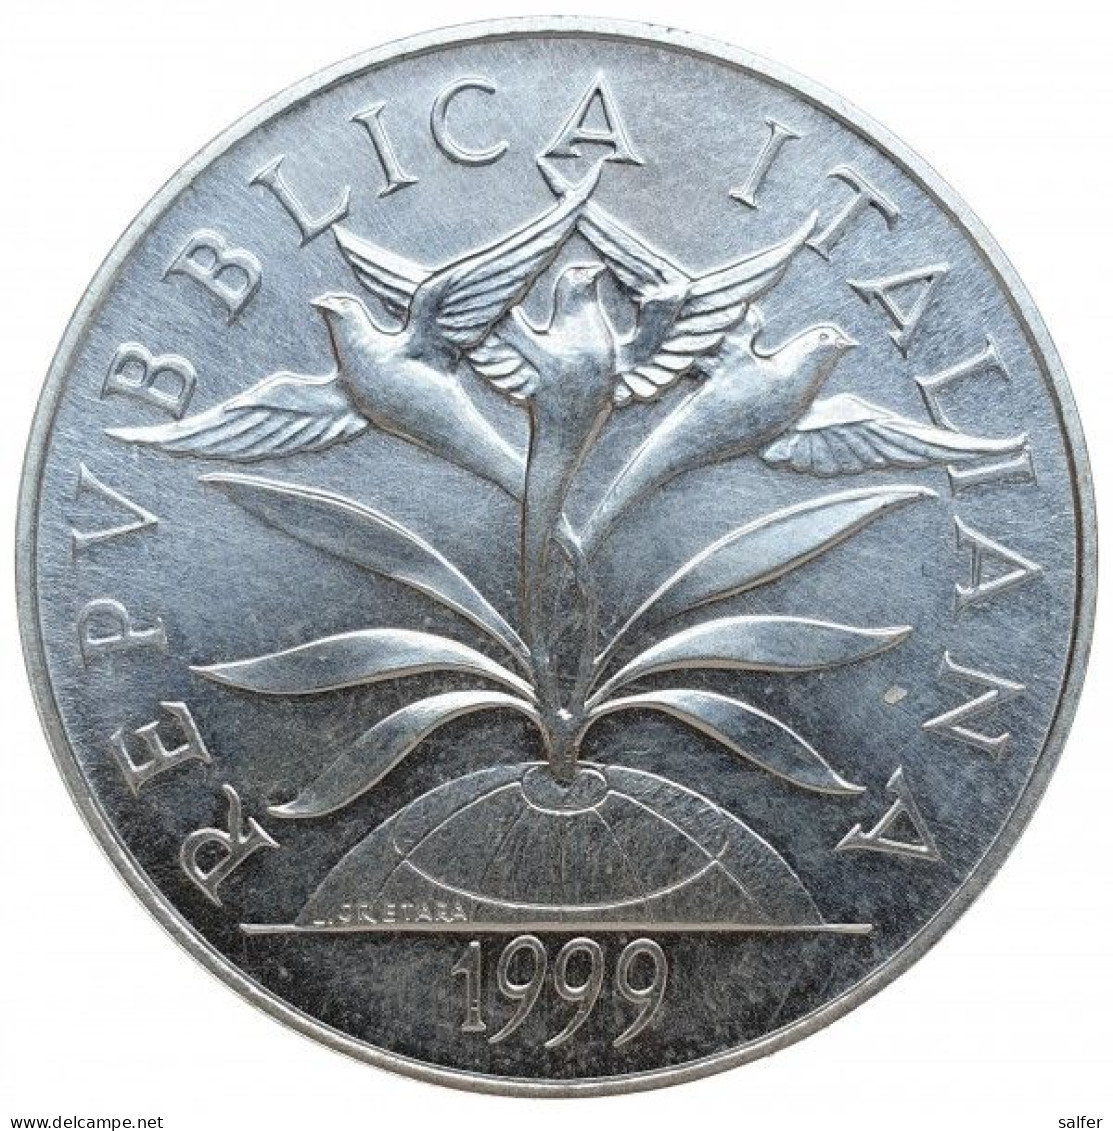 REPUBBLICA  1999 ANNO DUEMILA DITTICO   Lire 5000  X 2 AG - Gedenkmünzen